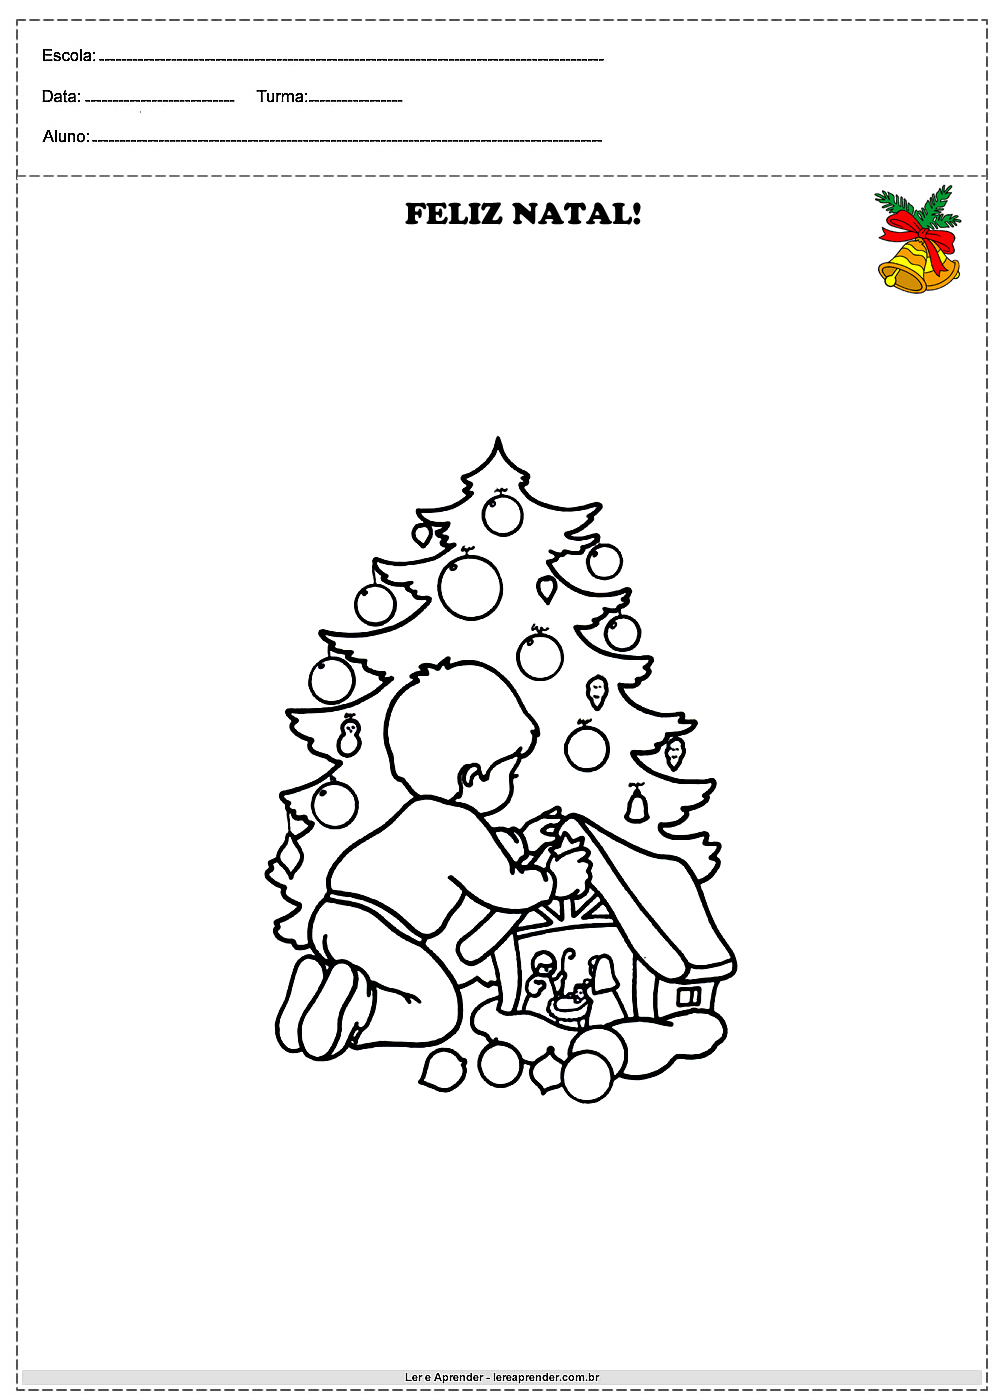 Imagens para colorir de natal